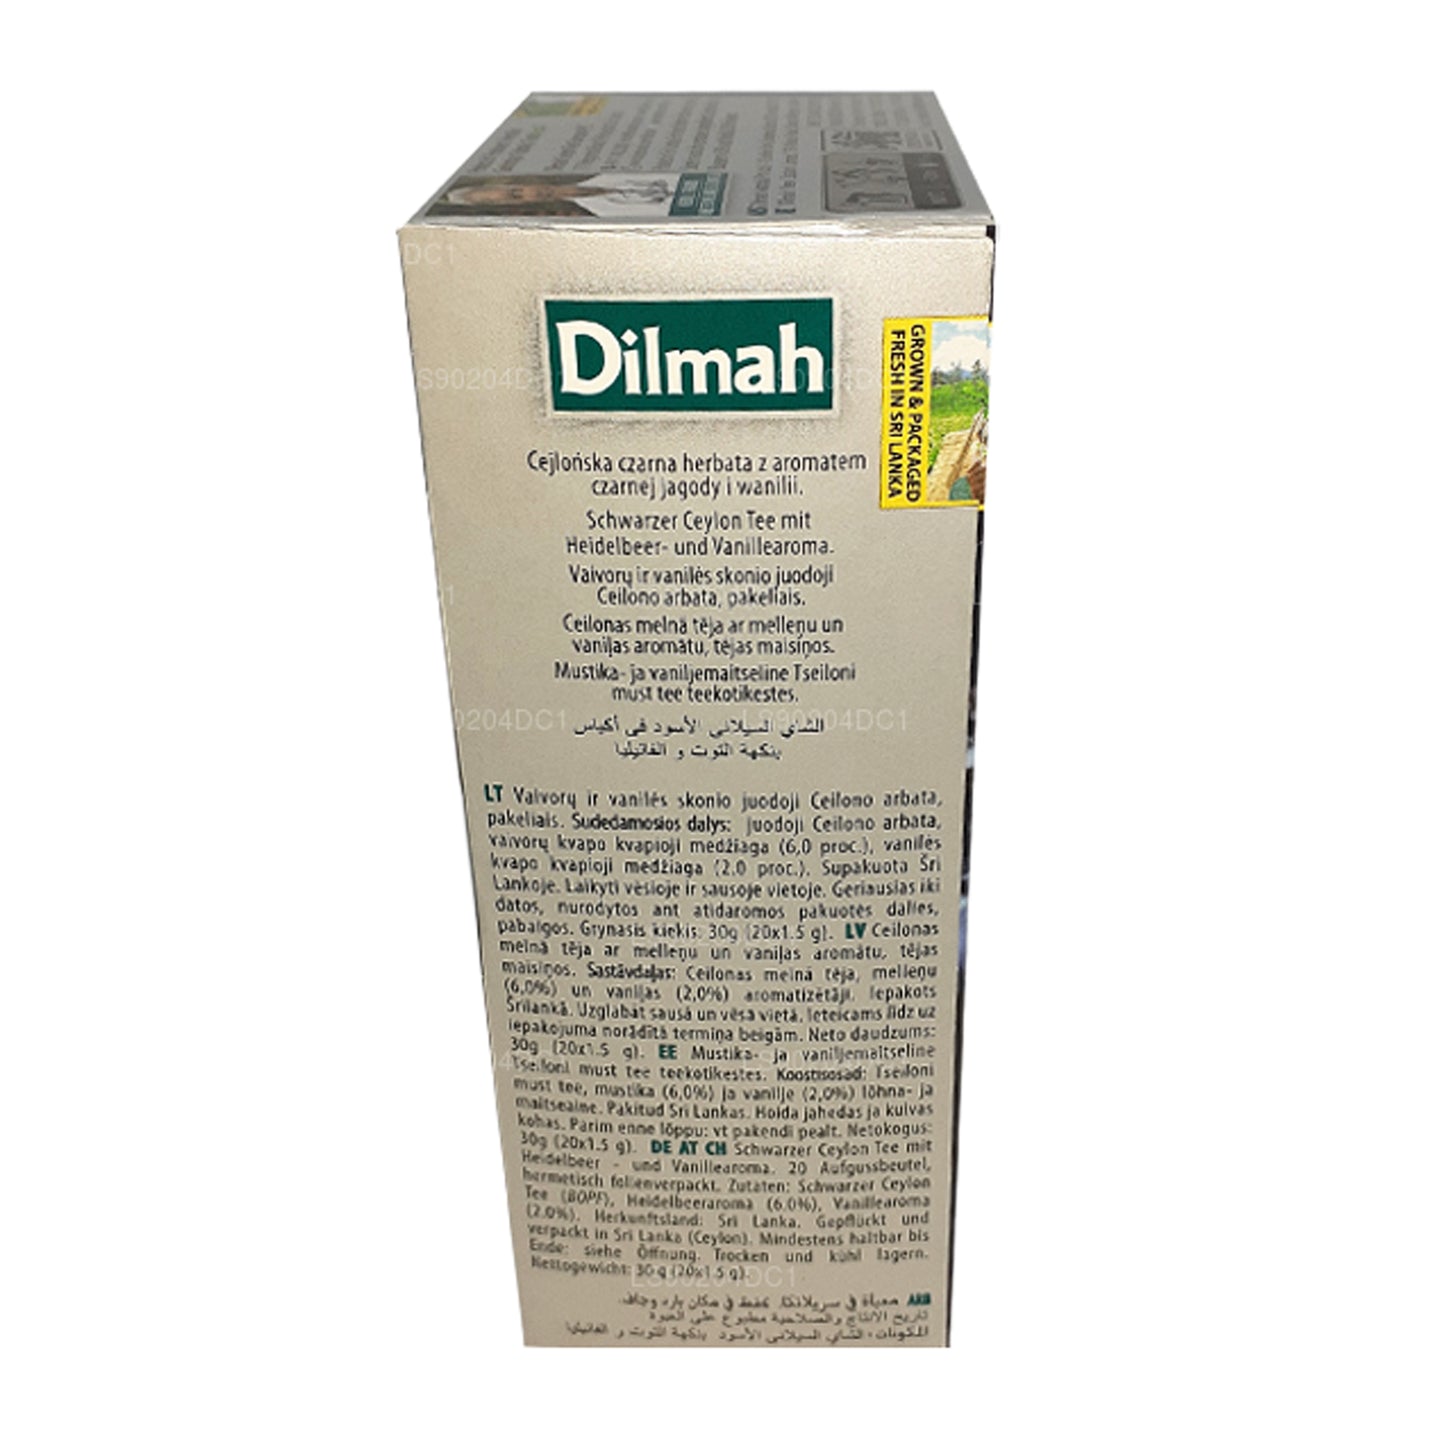 Thé aromatisé à la myrtille et à la vanille Dilmah (40 g) 20 sachets de thé